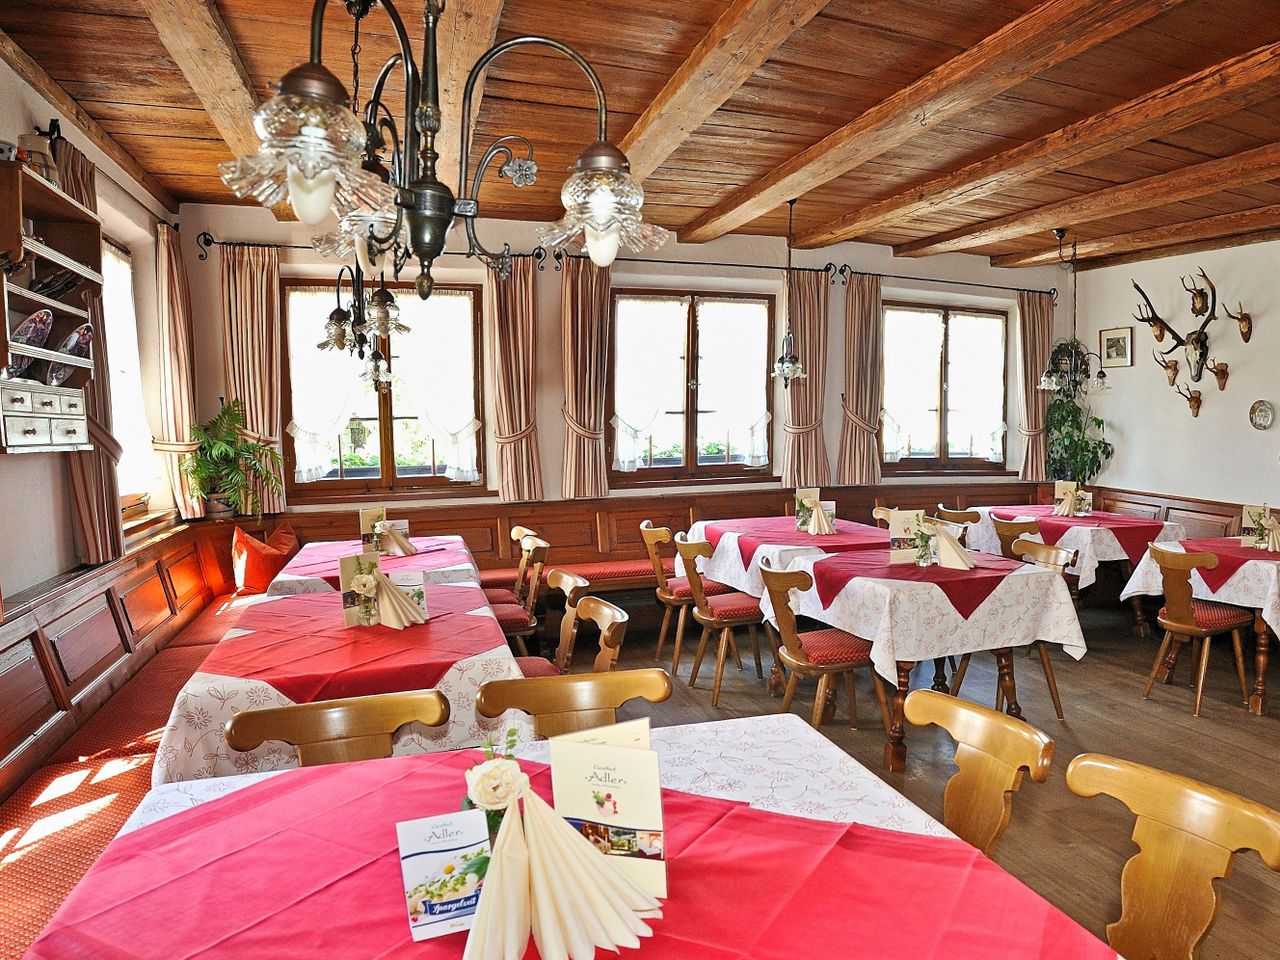 8 Tage in Lindau am Bodensee mit Abendessen und ÖPNV